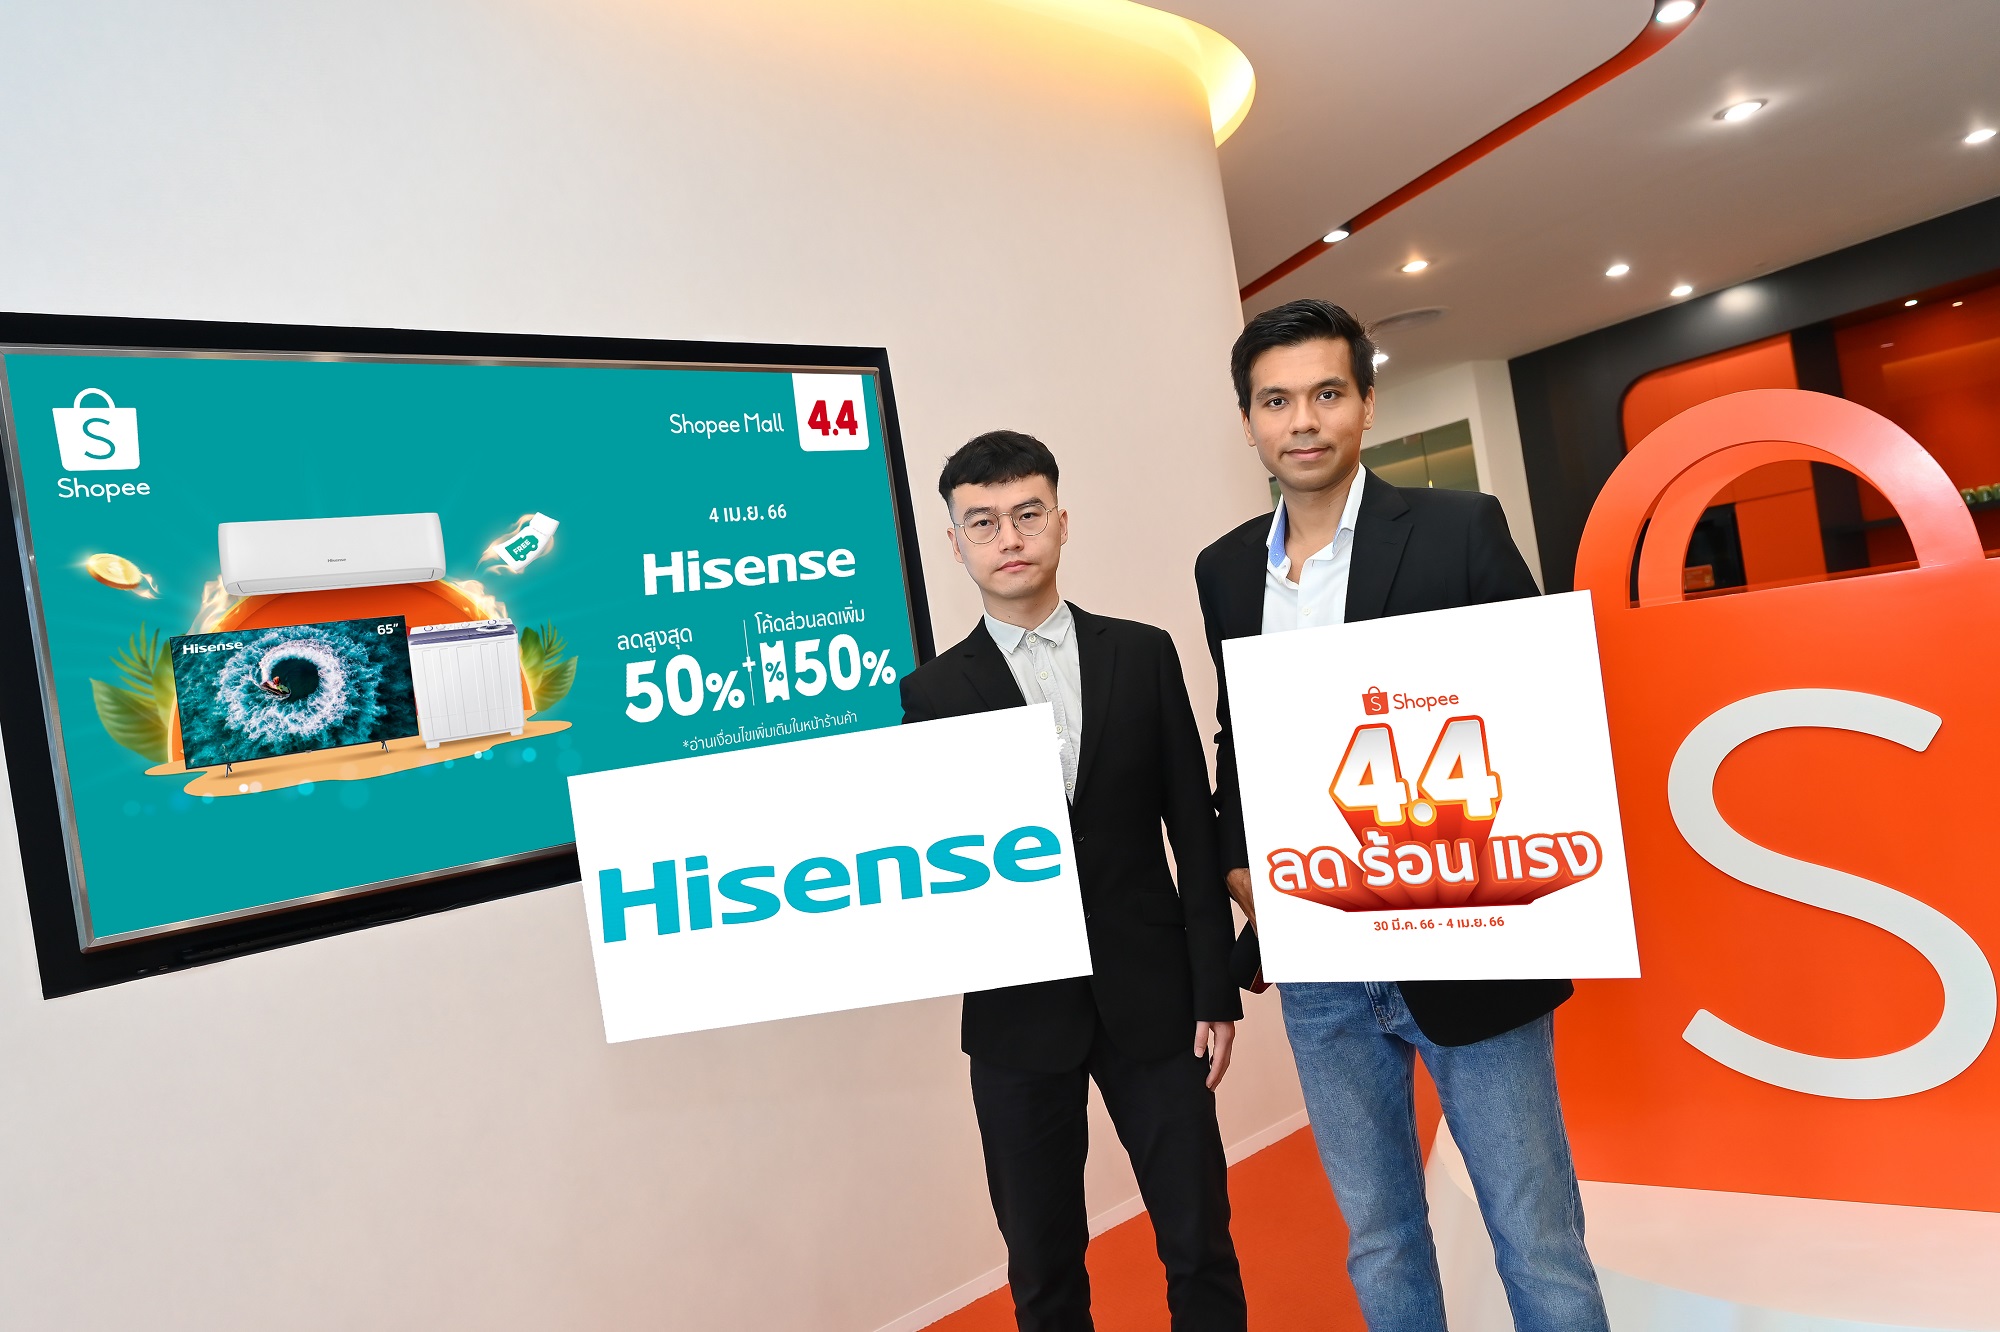 Hisense ย้ำภาพผู้นำตลาดสมาร์ททีวี ประเดิมไตรมาส 2 ในแคมเปญรับสงกรานต์ ‘Shopee 4.4 ลด ร้อน แรง’